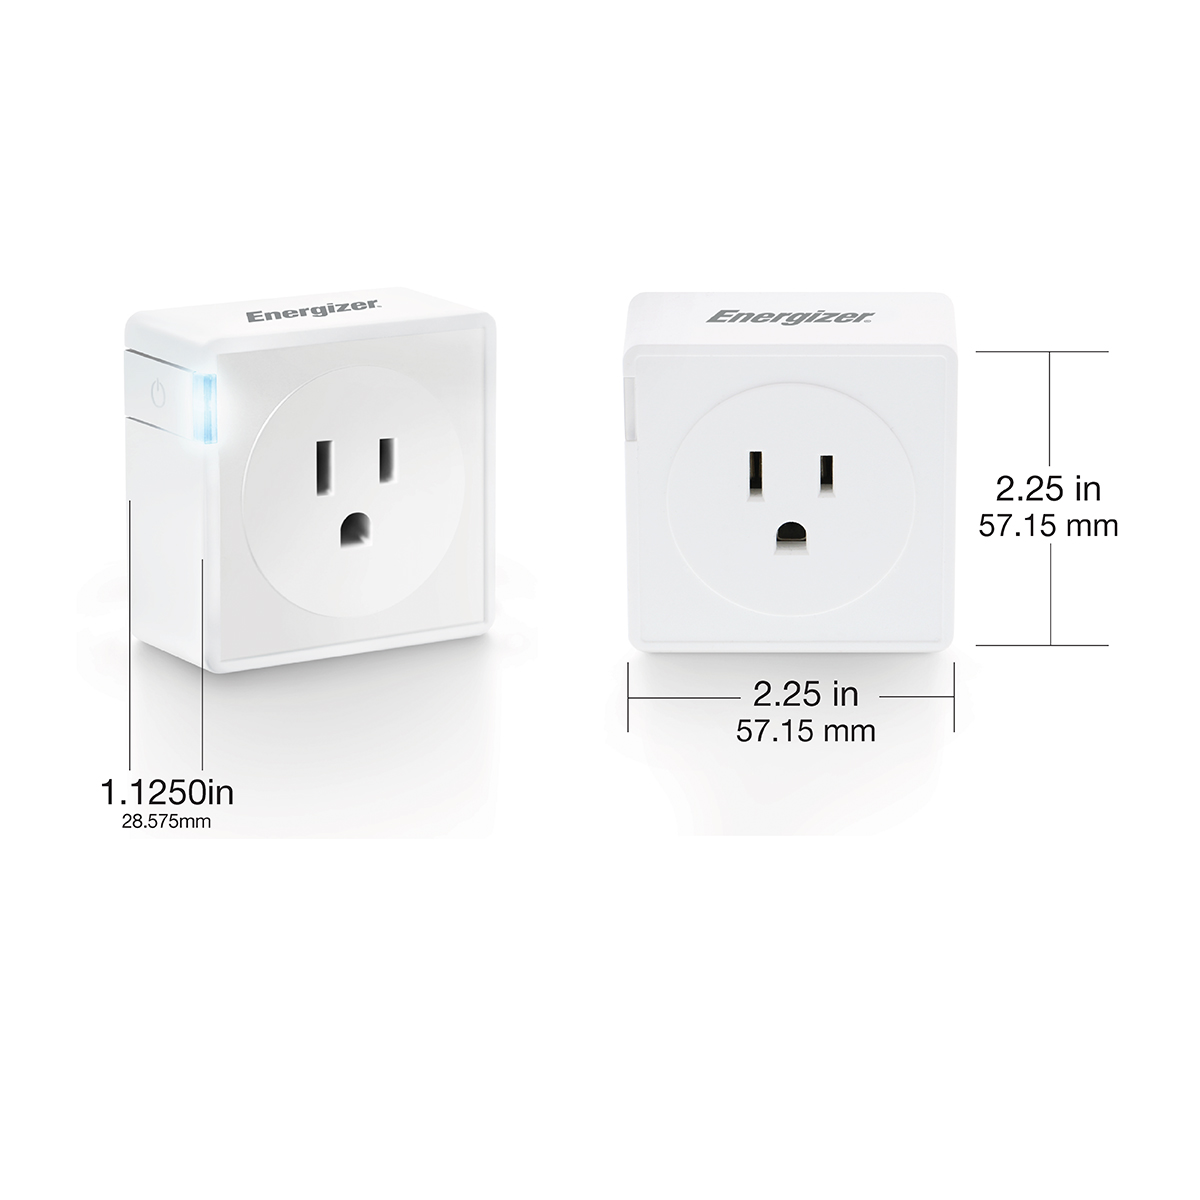 SMART DOT Indoor Single Outlet Smart Plug